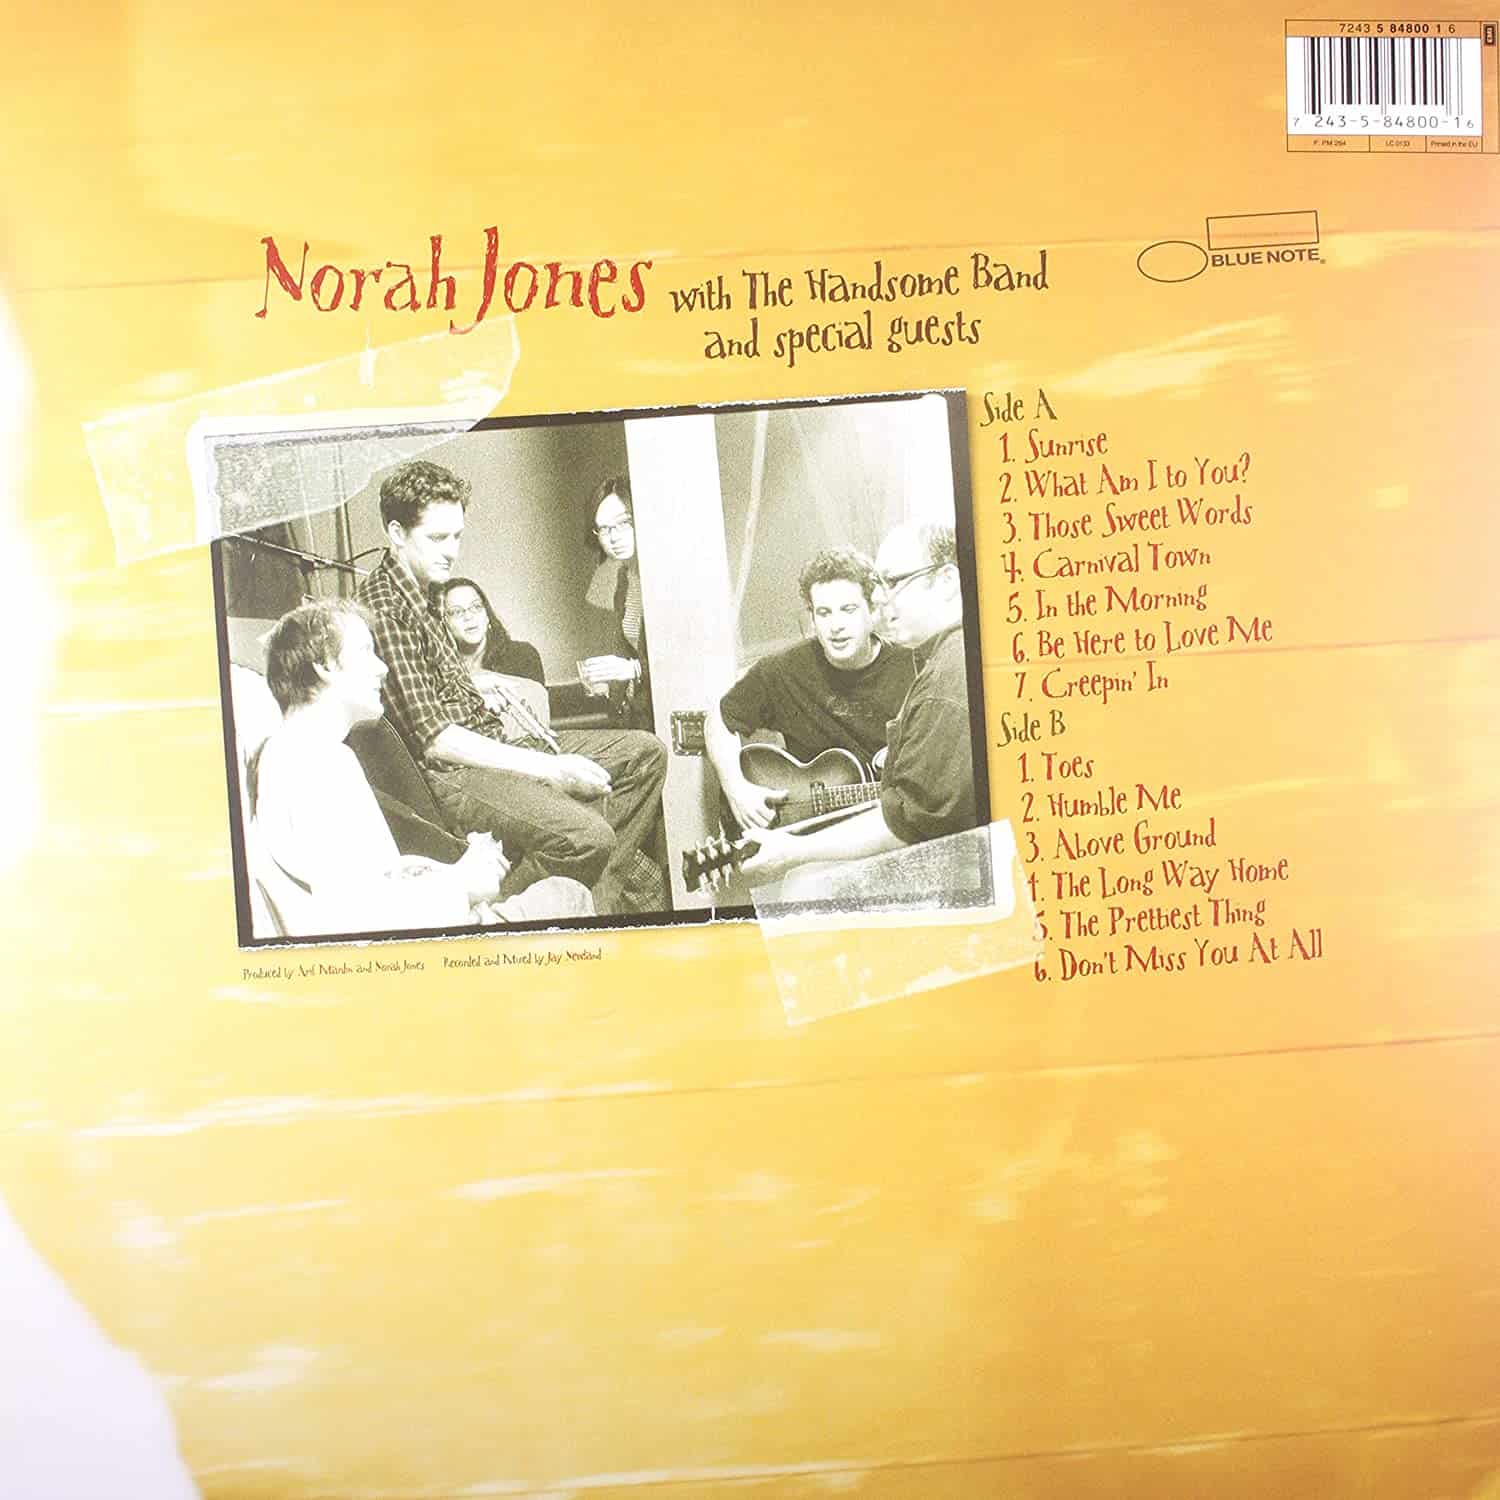 Norah-Jones-Feels-Like-Home-vinyl-record-album2